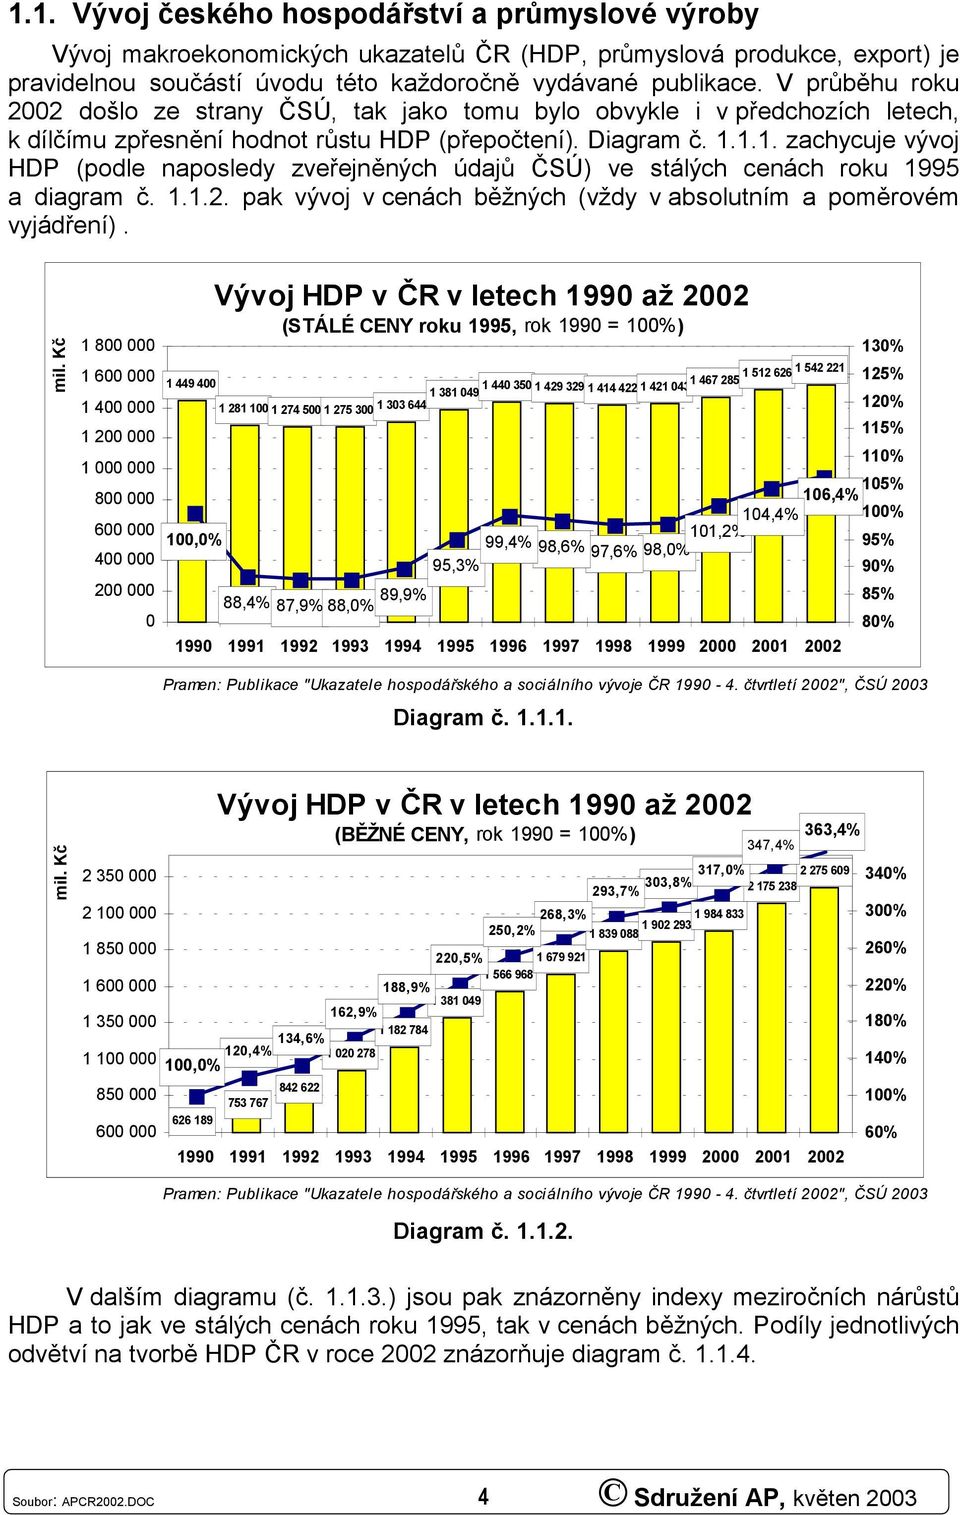 1.1. zachycuje vývoj HDP (podle naposledy zveřejněných údajů ČSÚ) ve stálých cenách roku 1995 a diagram č. 1.1.2. pak vývoj v cenách běžných (vždy v absolutním a poměrovém vyjádření). mil.